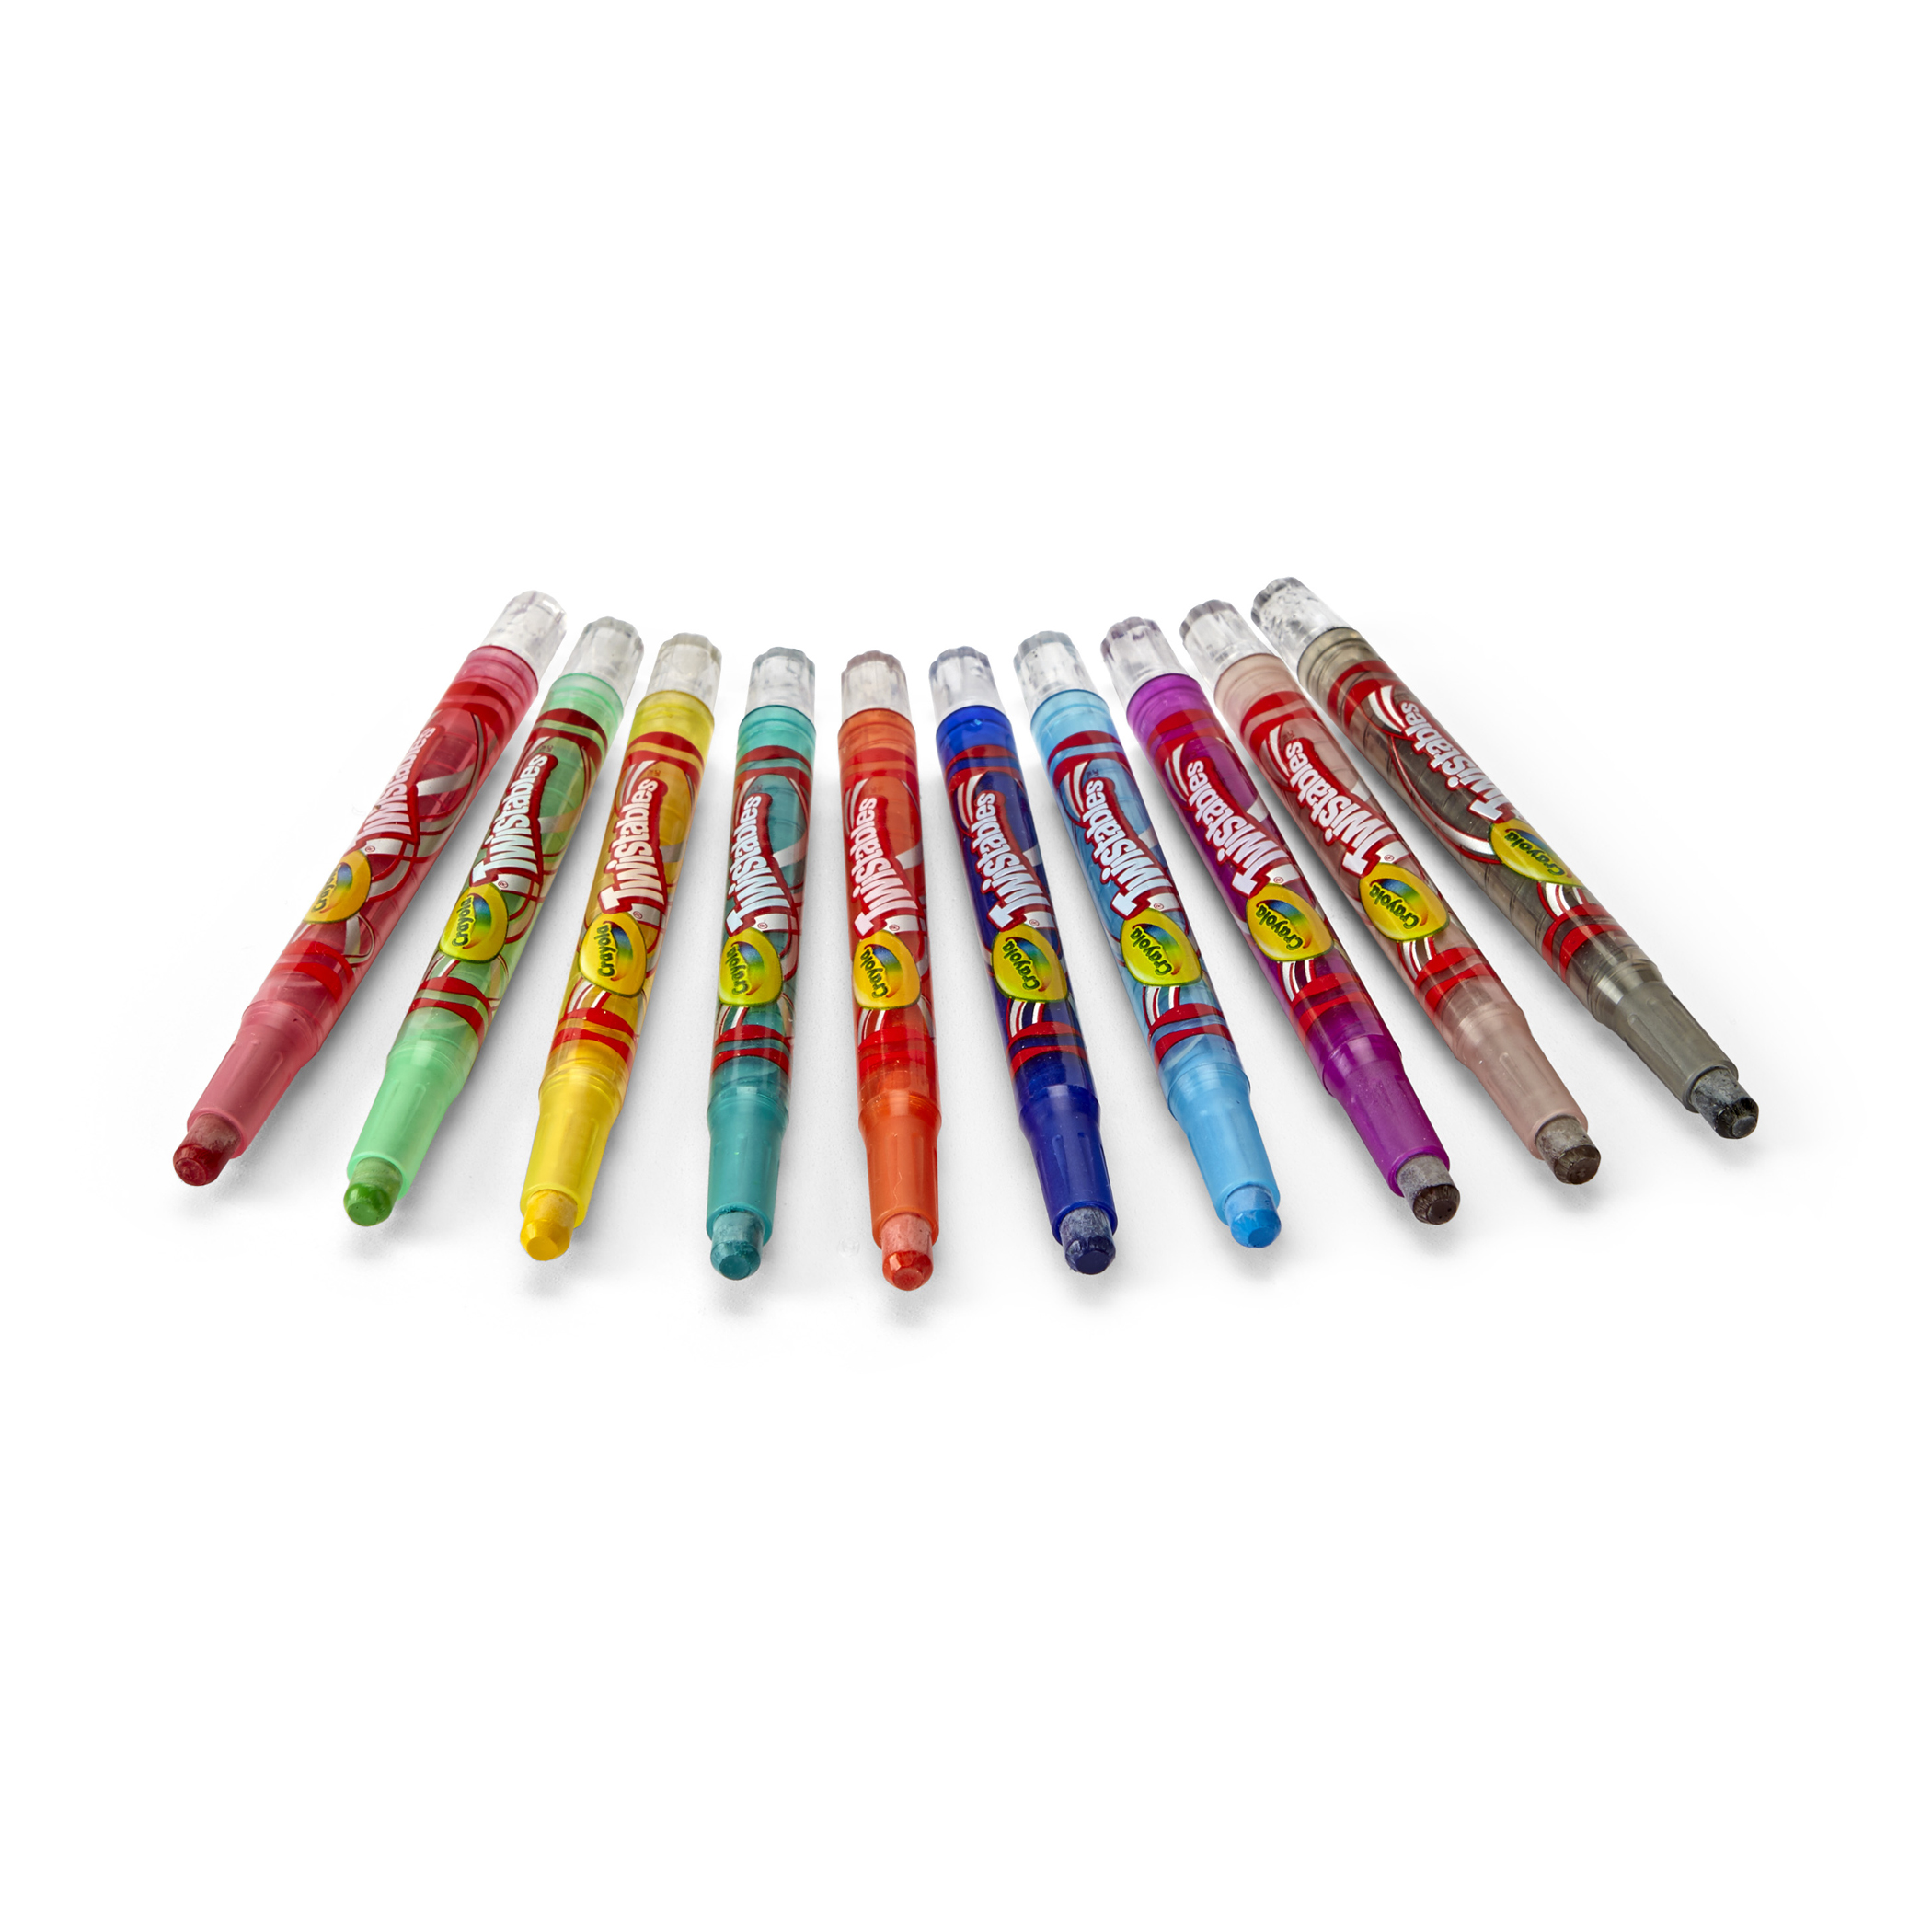 Crayola Twistables Mini Crayons - 24 count